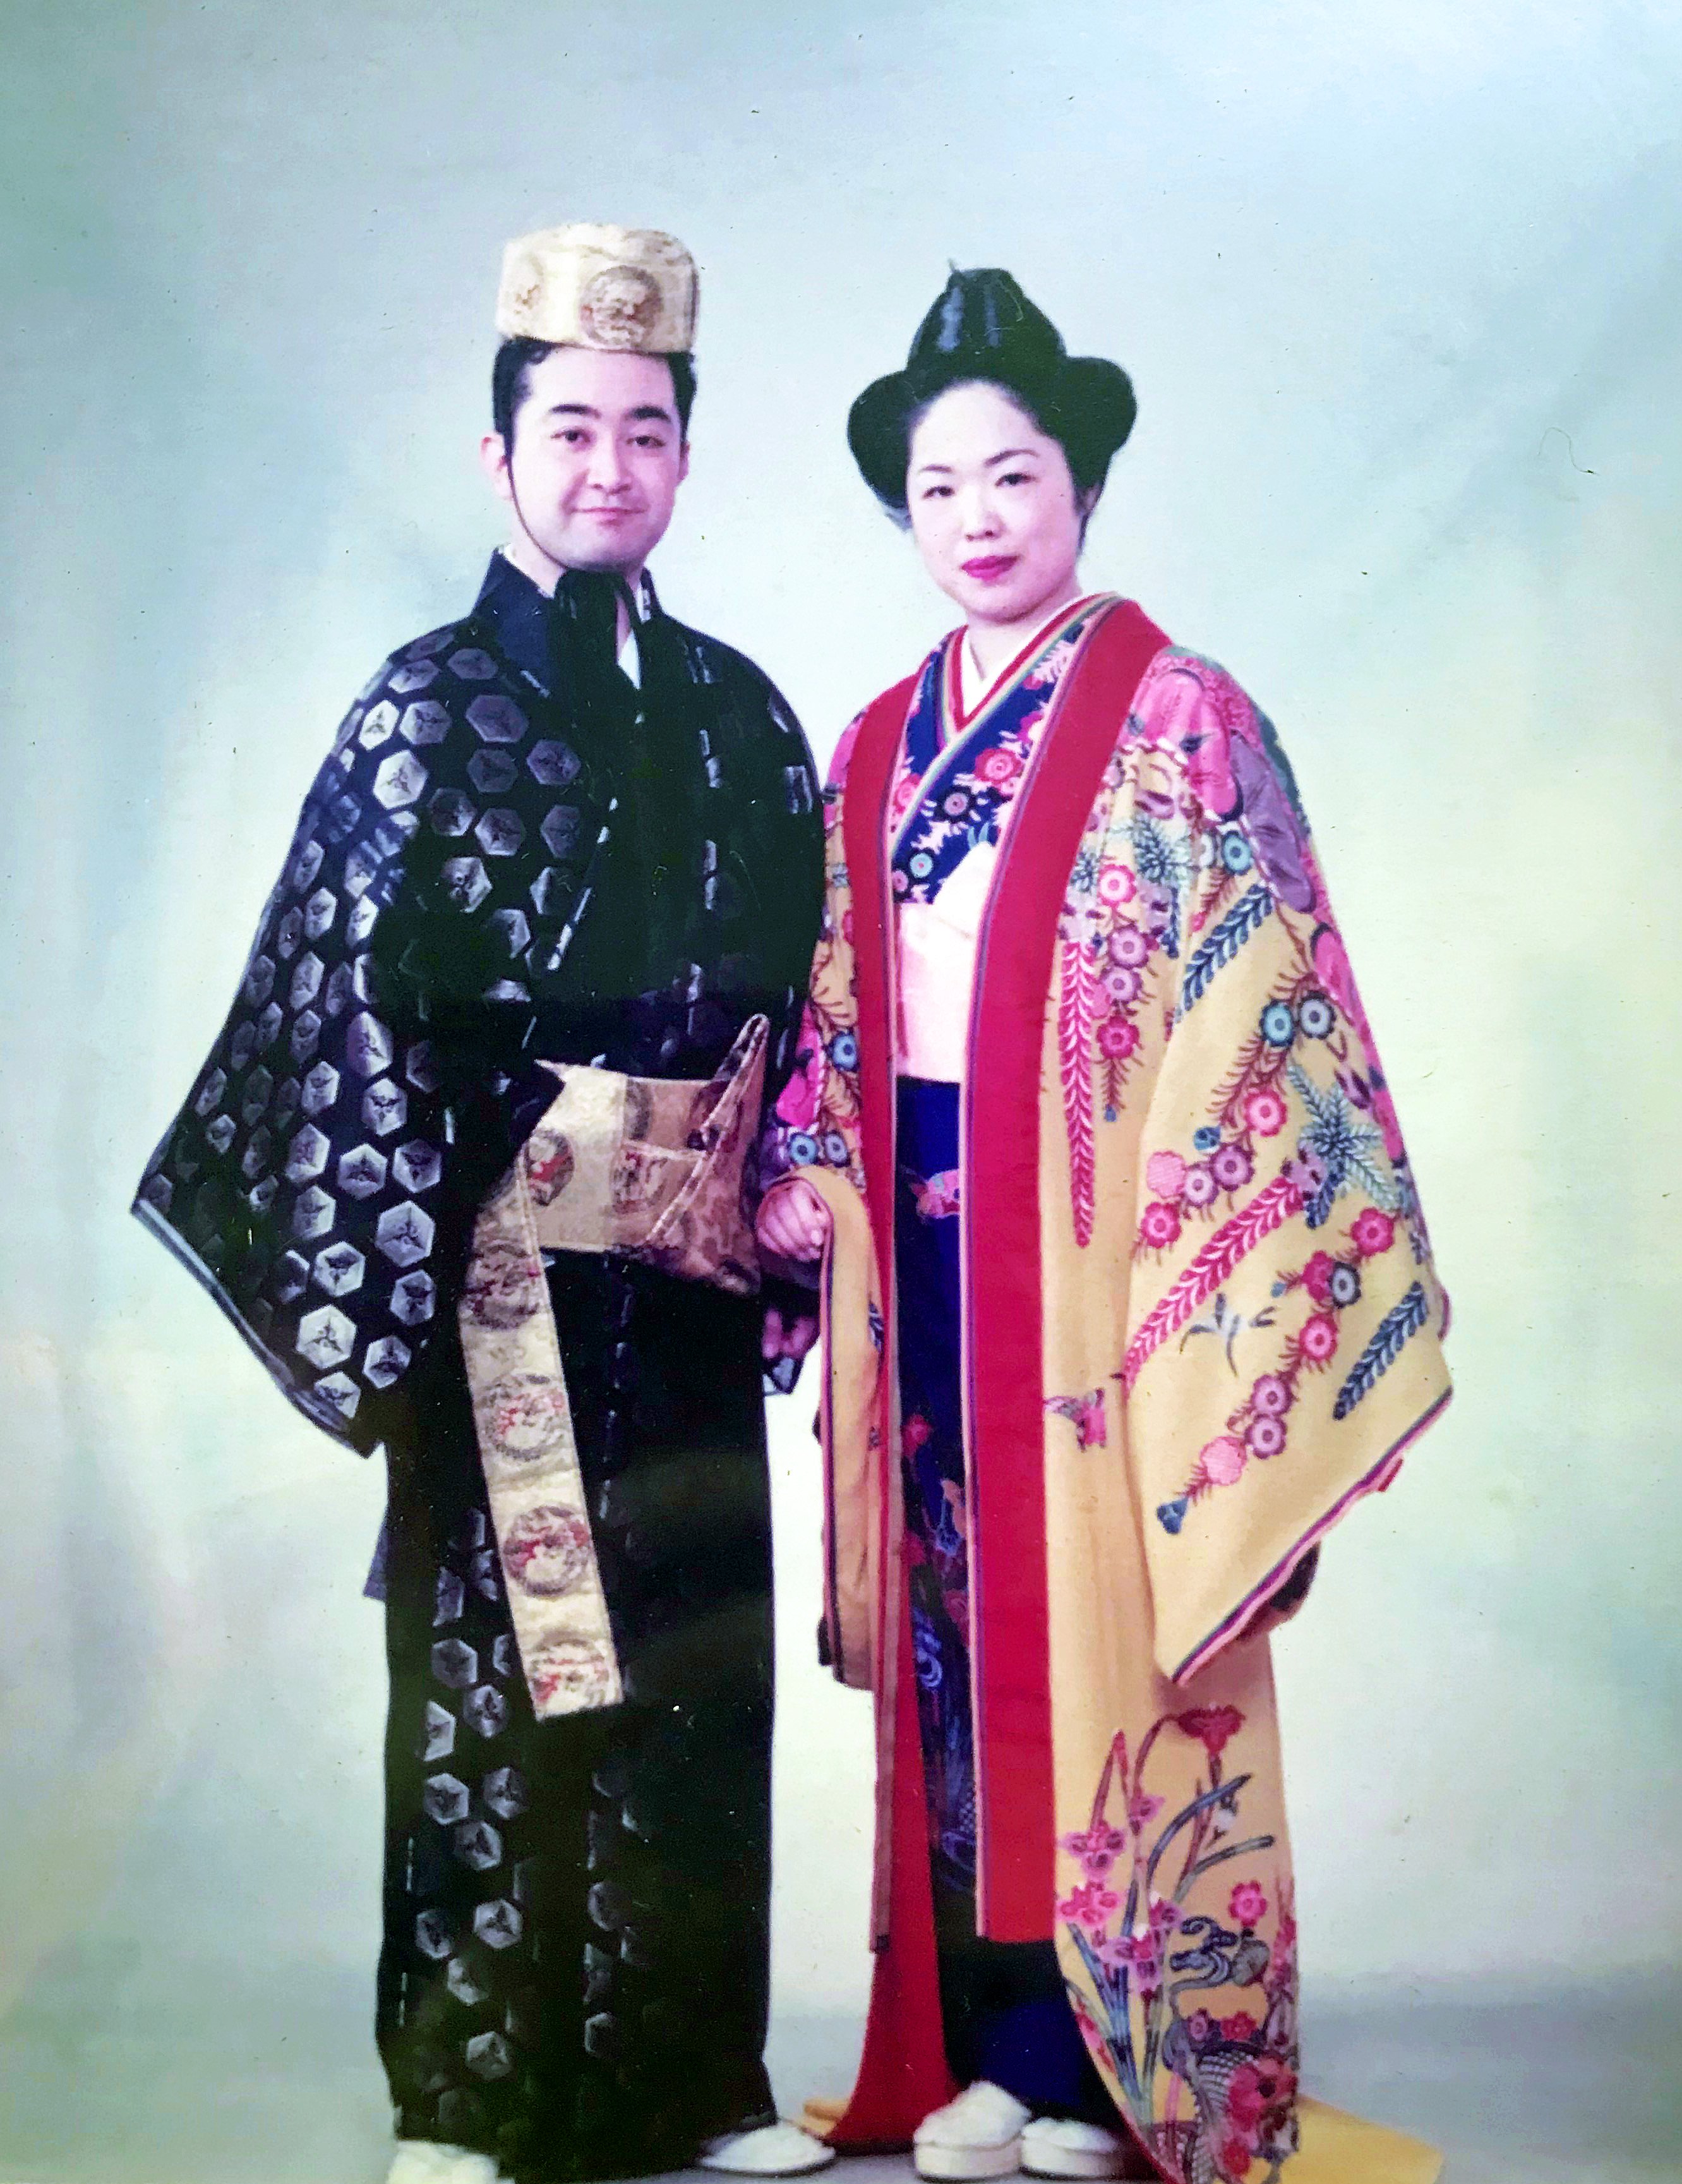 琉球伝統衣装のリース 着付 髪結 琉球舞踊 衣装 小道具 エイサーの衣装 金城康子琉舞道場